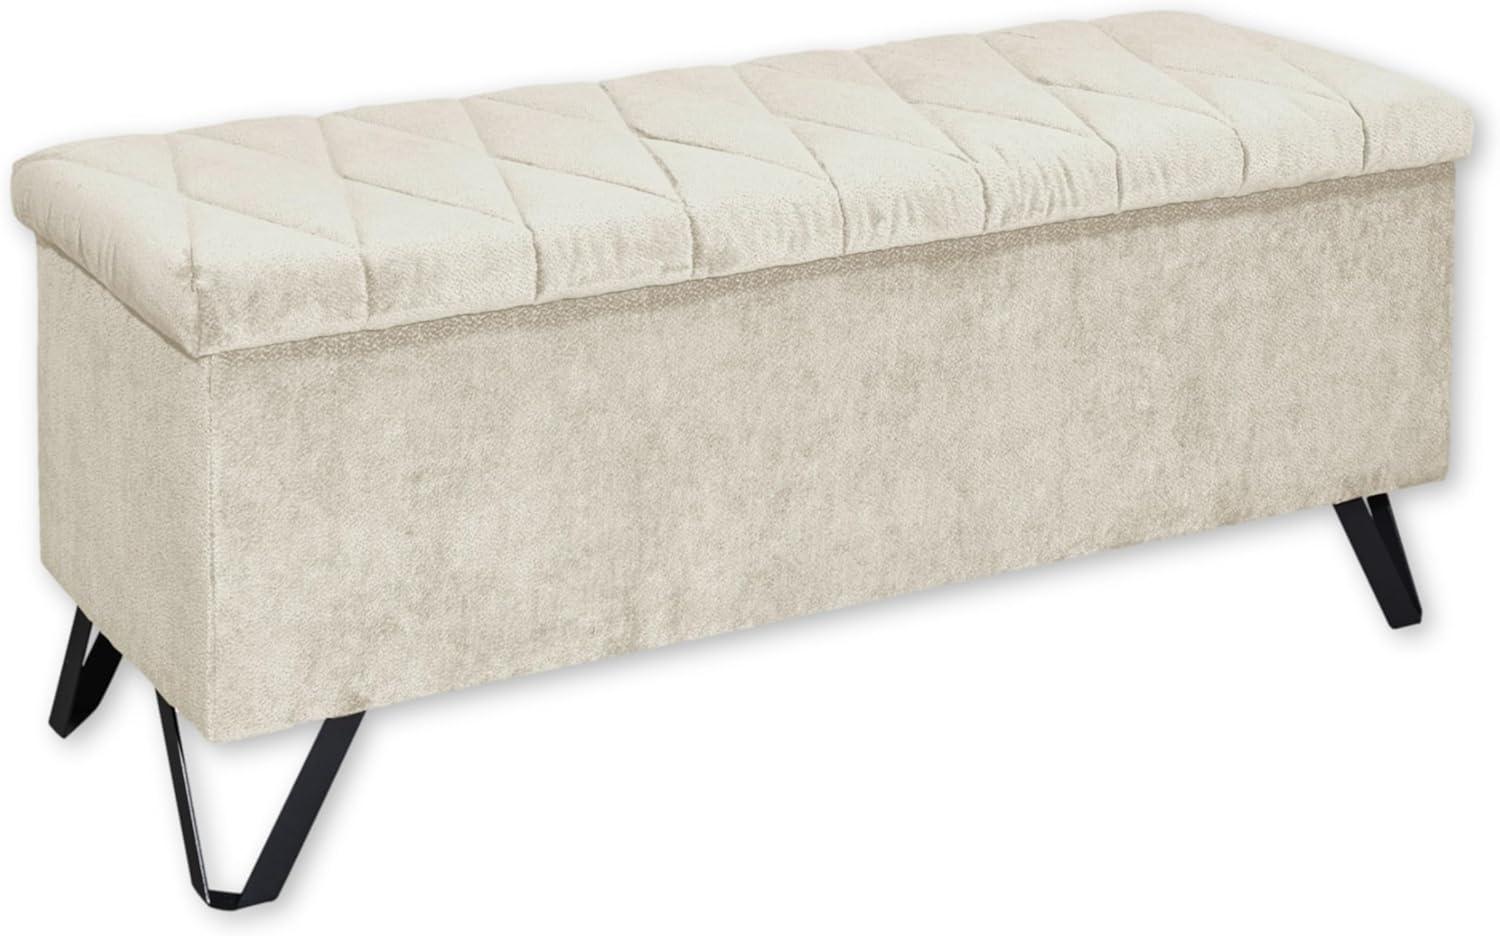 MARSALA Sitzbank mit Stauraum und gepolstertem Deckel, Cream - Geräumige Sitztruhe für Boxspringbetten im Schlafzimmer - 139 x 58 x 50 cm (B/H/T) Bild 1